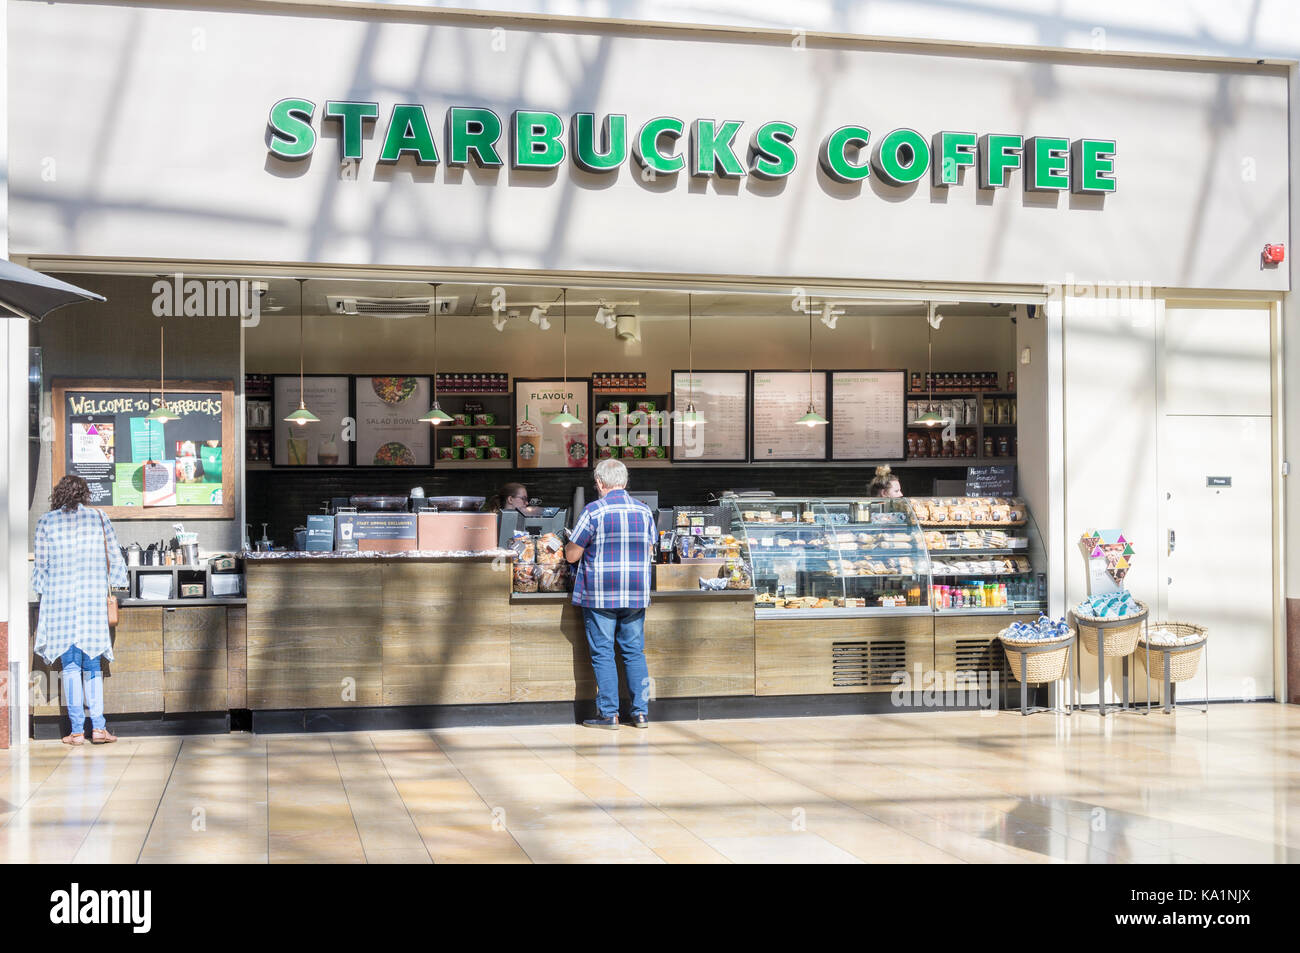 Client qui achète du café au Starbucks Coffee. Centre commercial Bullring, Birmingham, West Midlands, England, GB, au Royaume-Uni. Banque D'Images